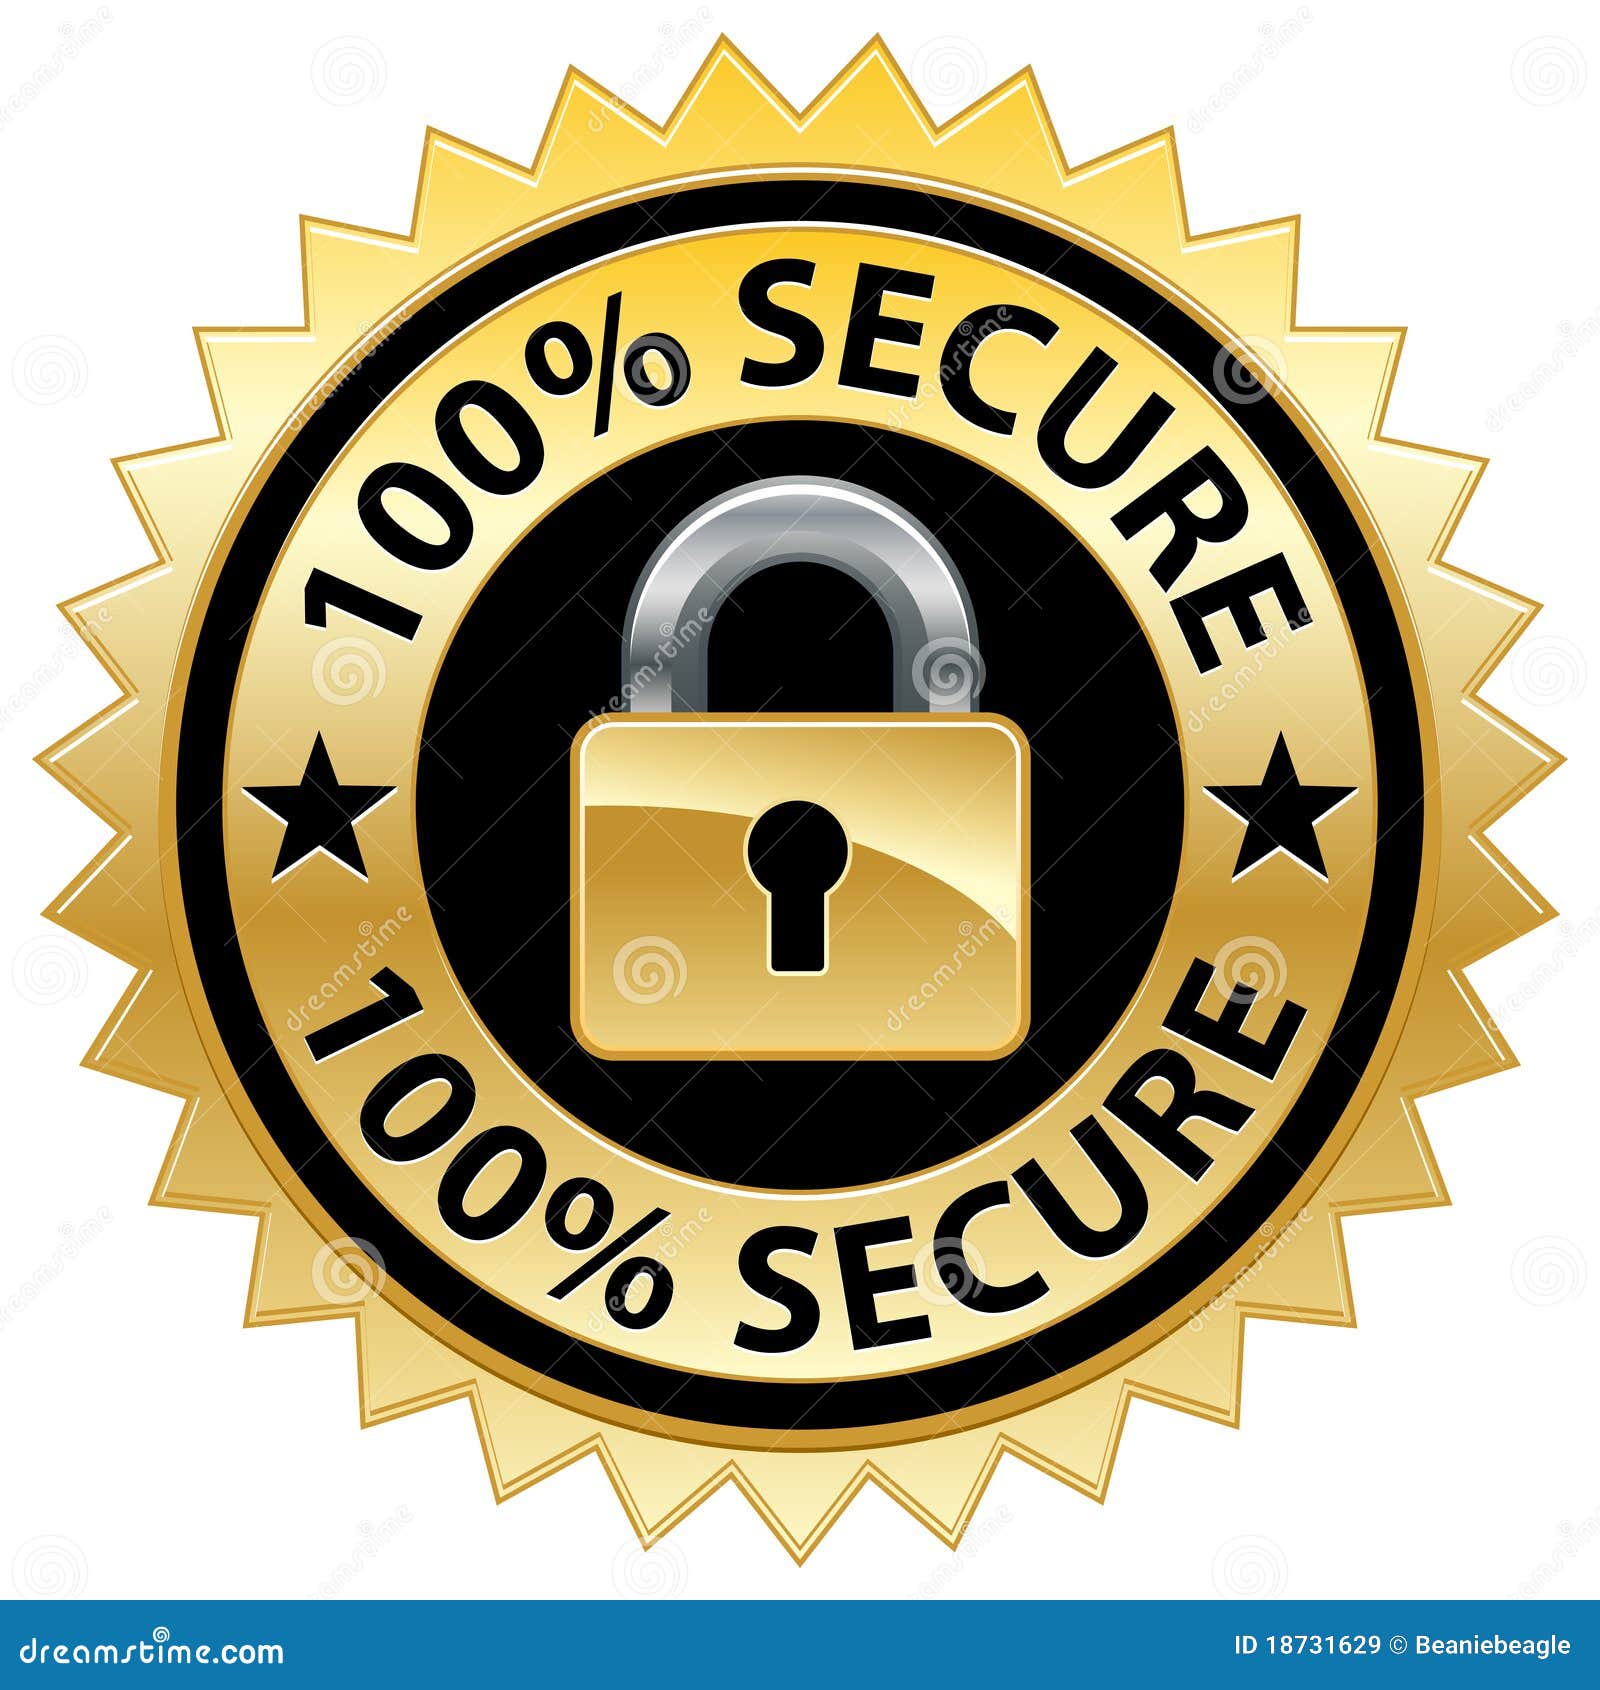 100% secure website seal